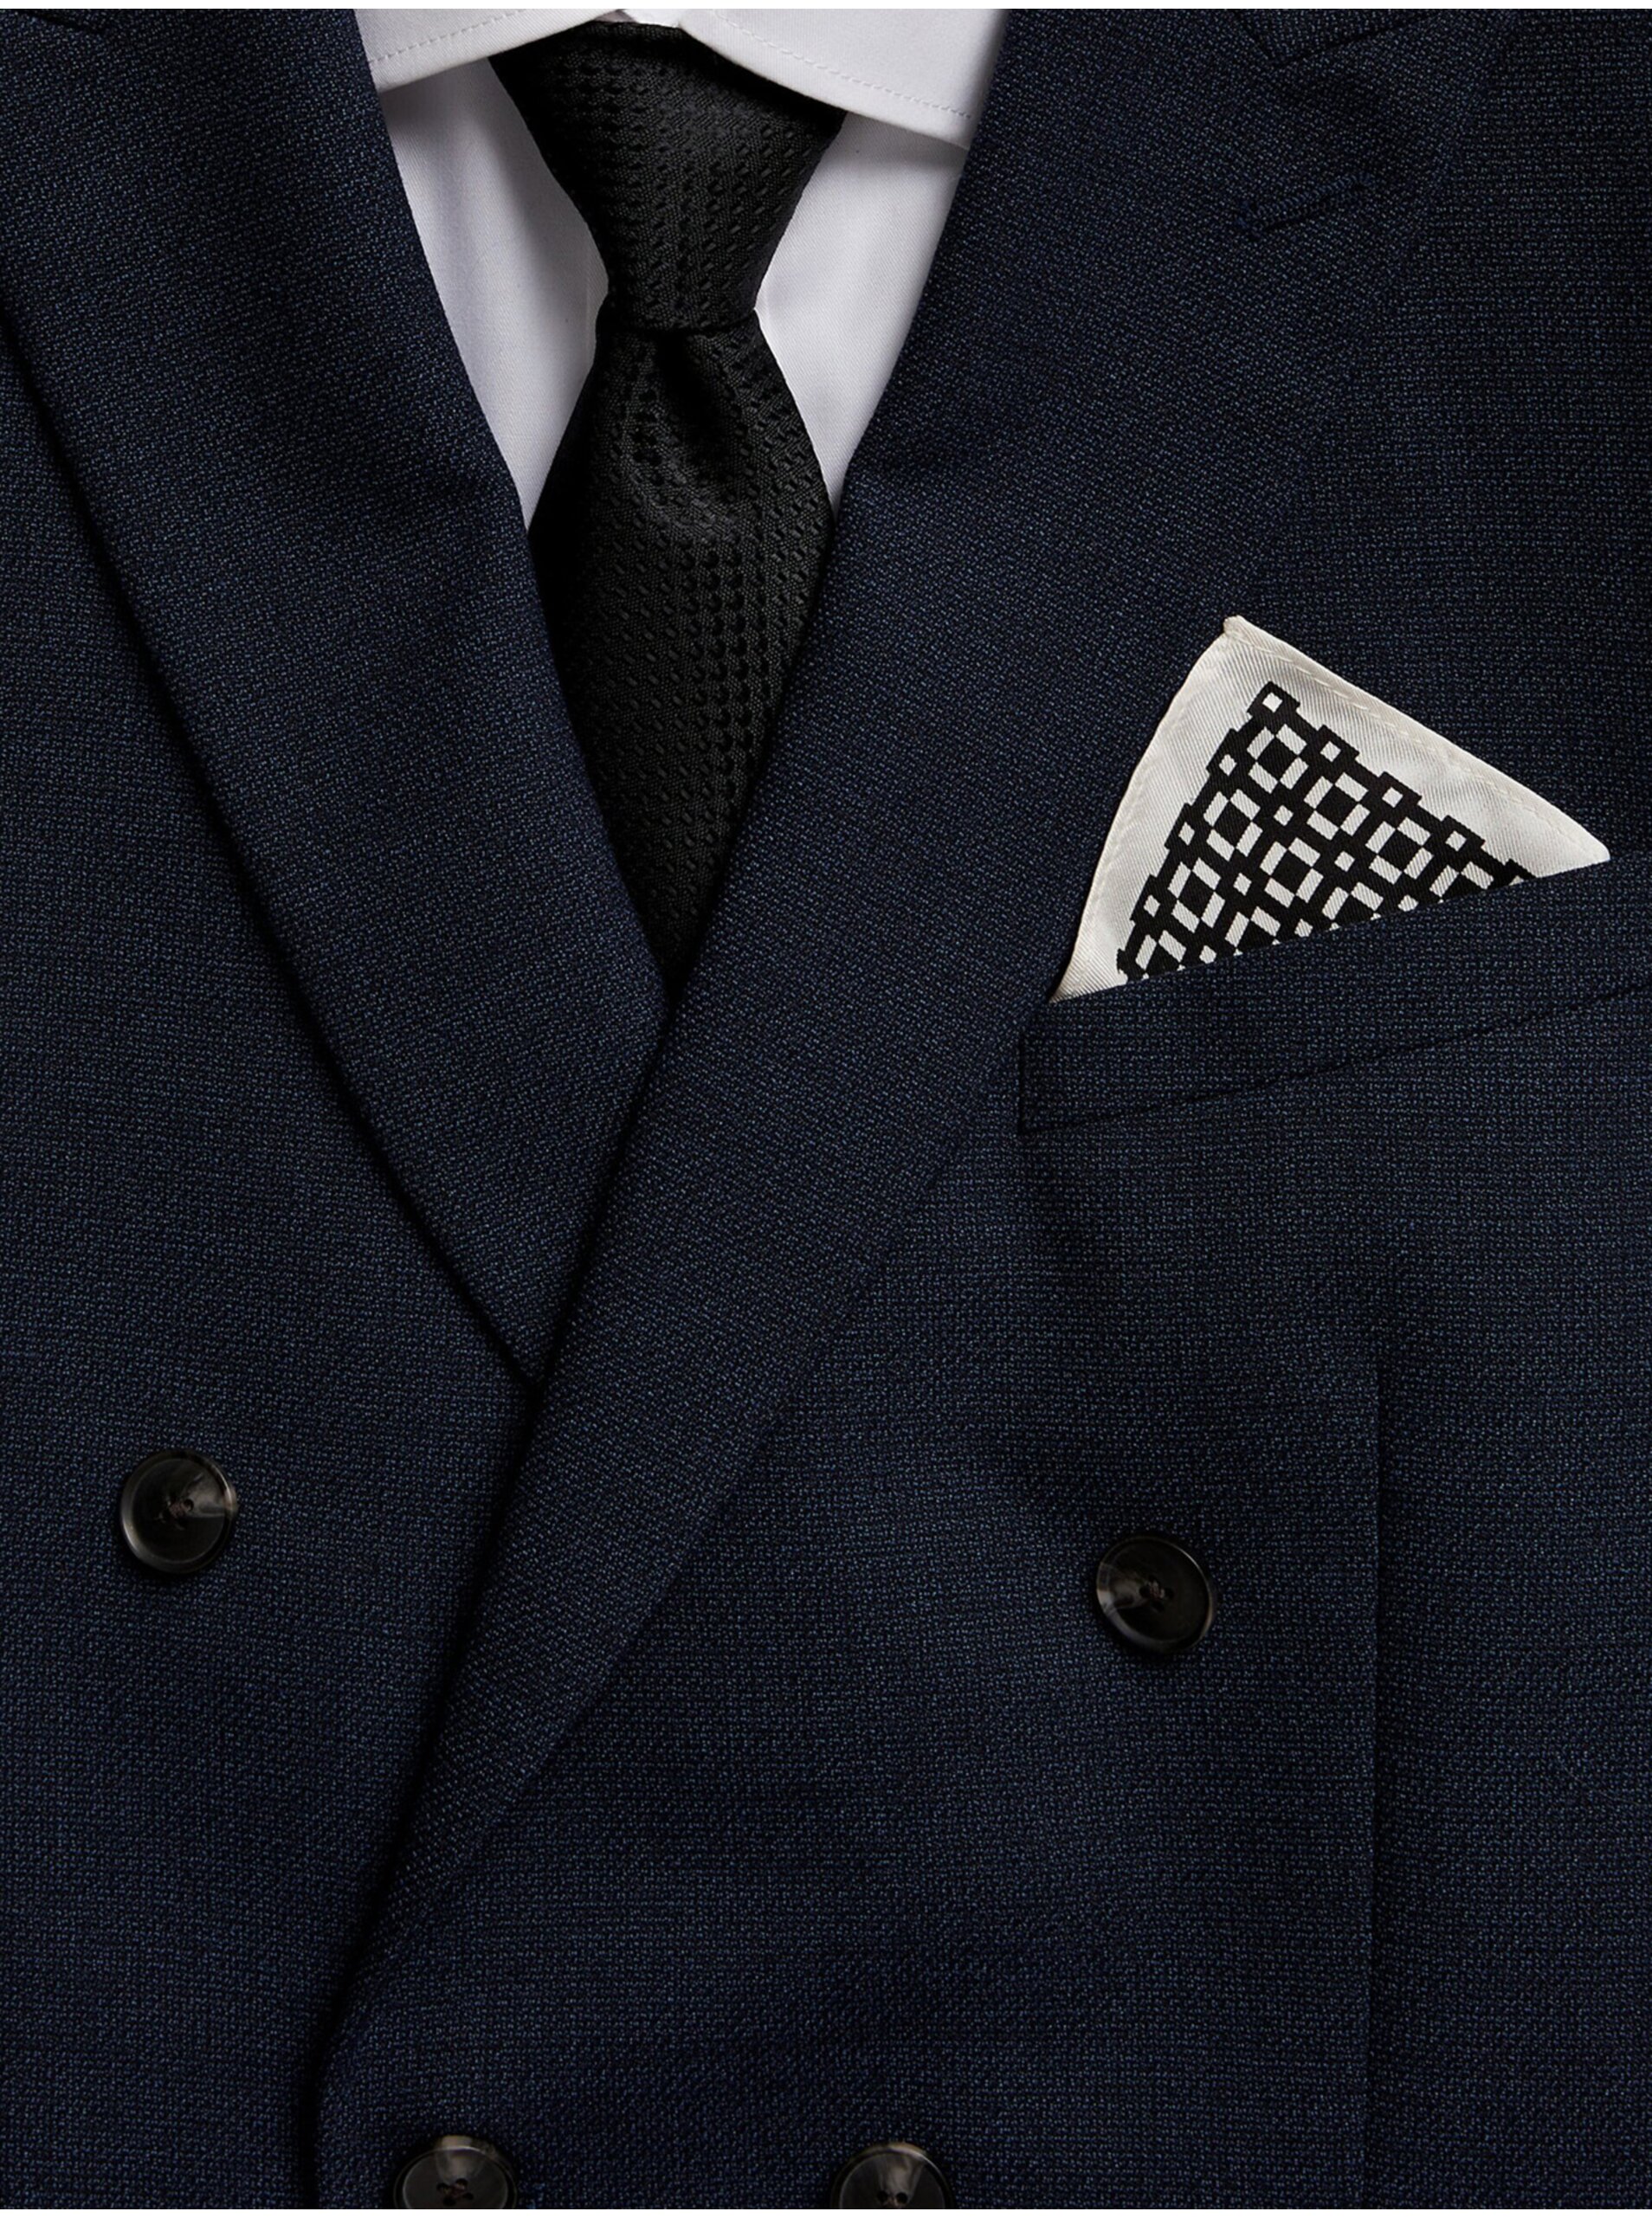 Lacno Pánska sada hodvábnej klopovej vreckovky a kravaty v bielej a čiernej farbe Marks & Spencer